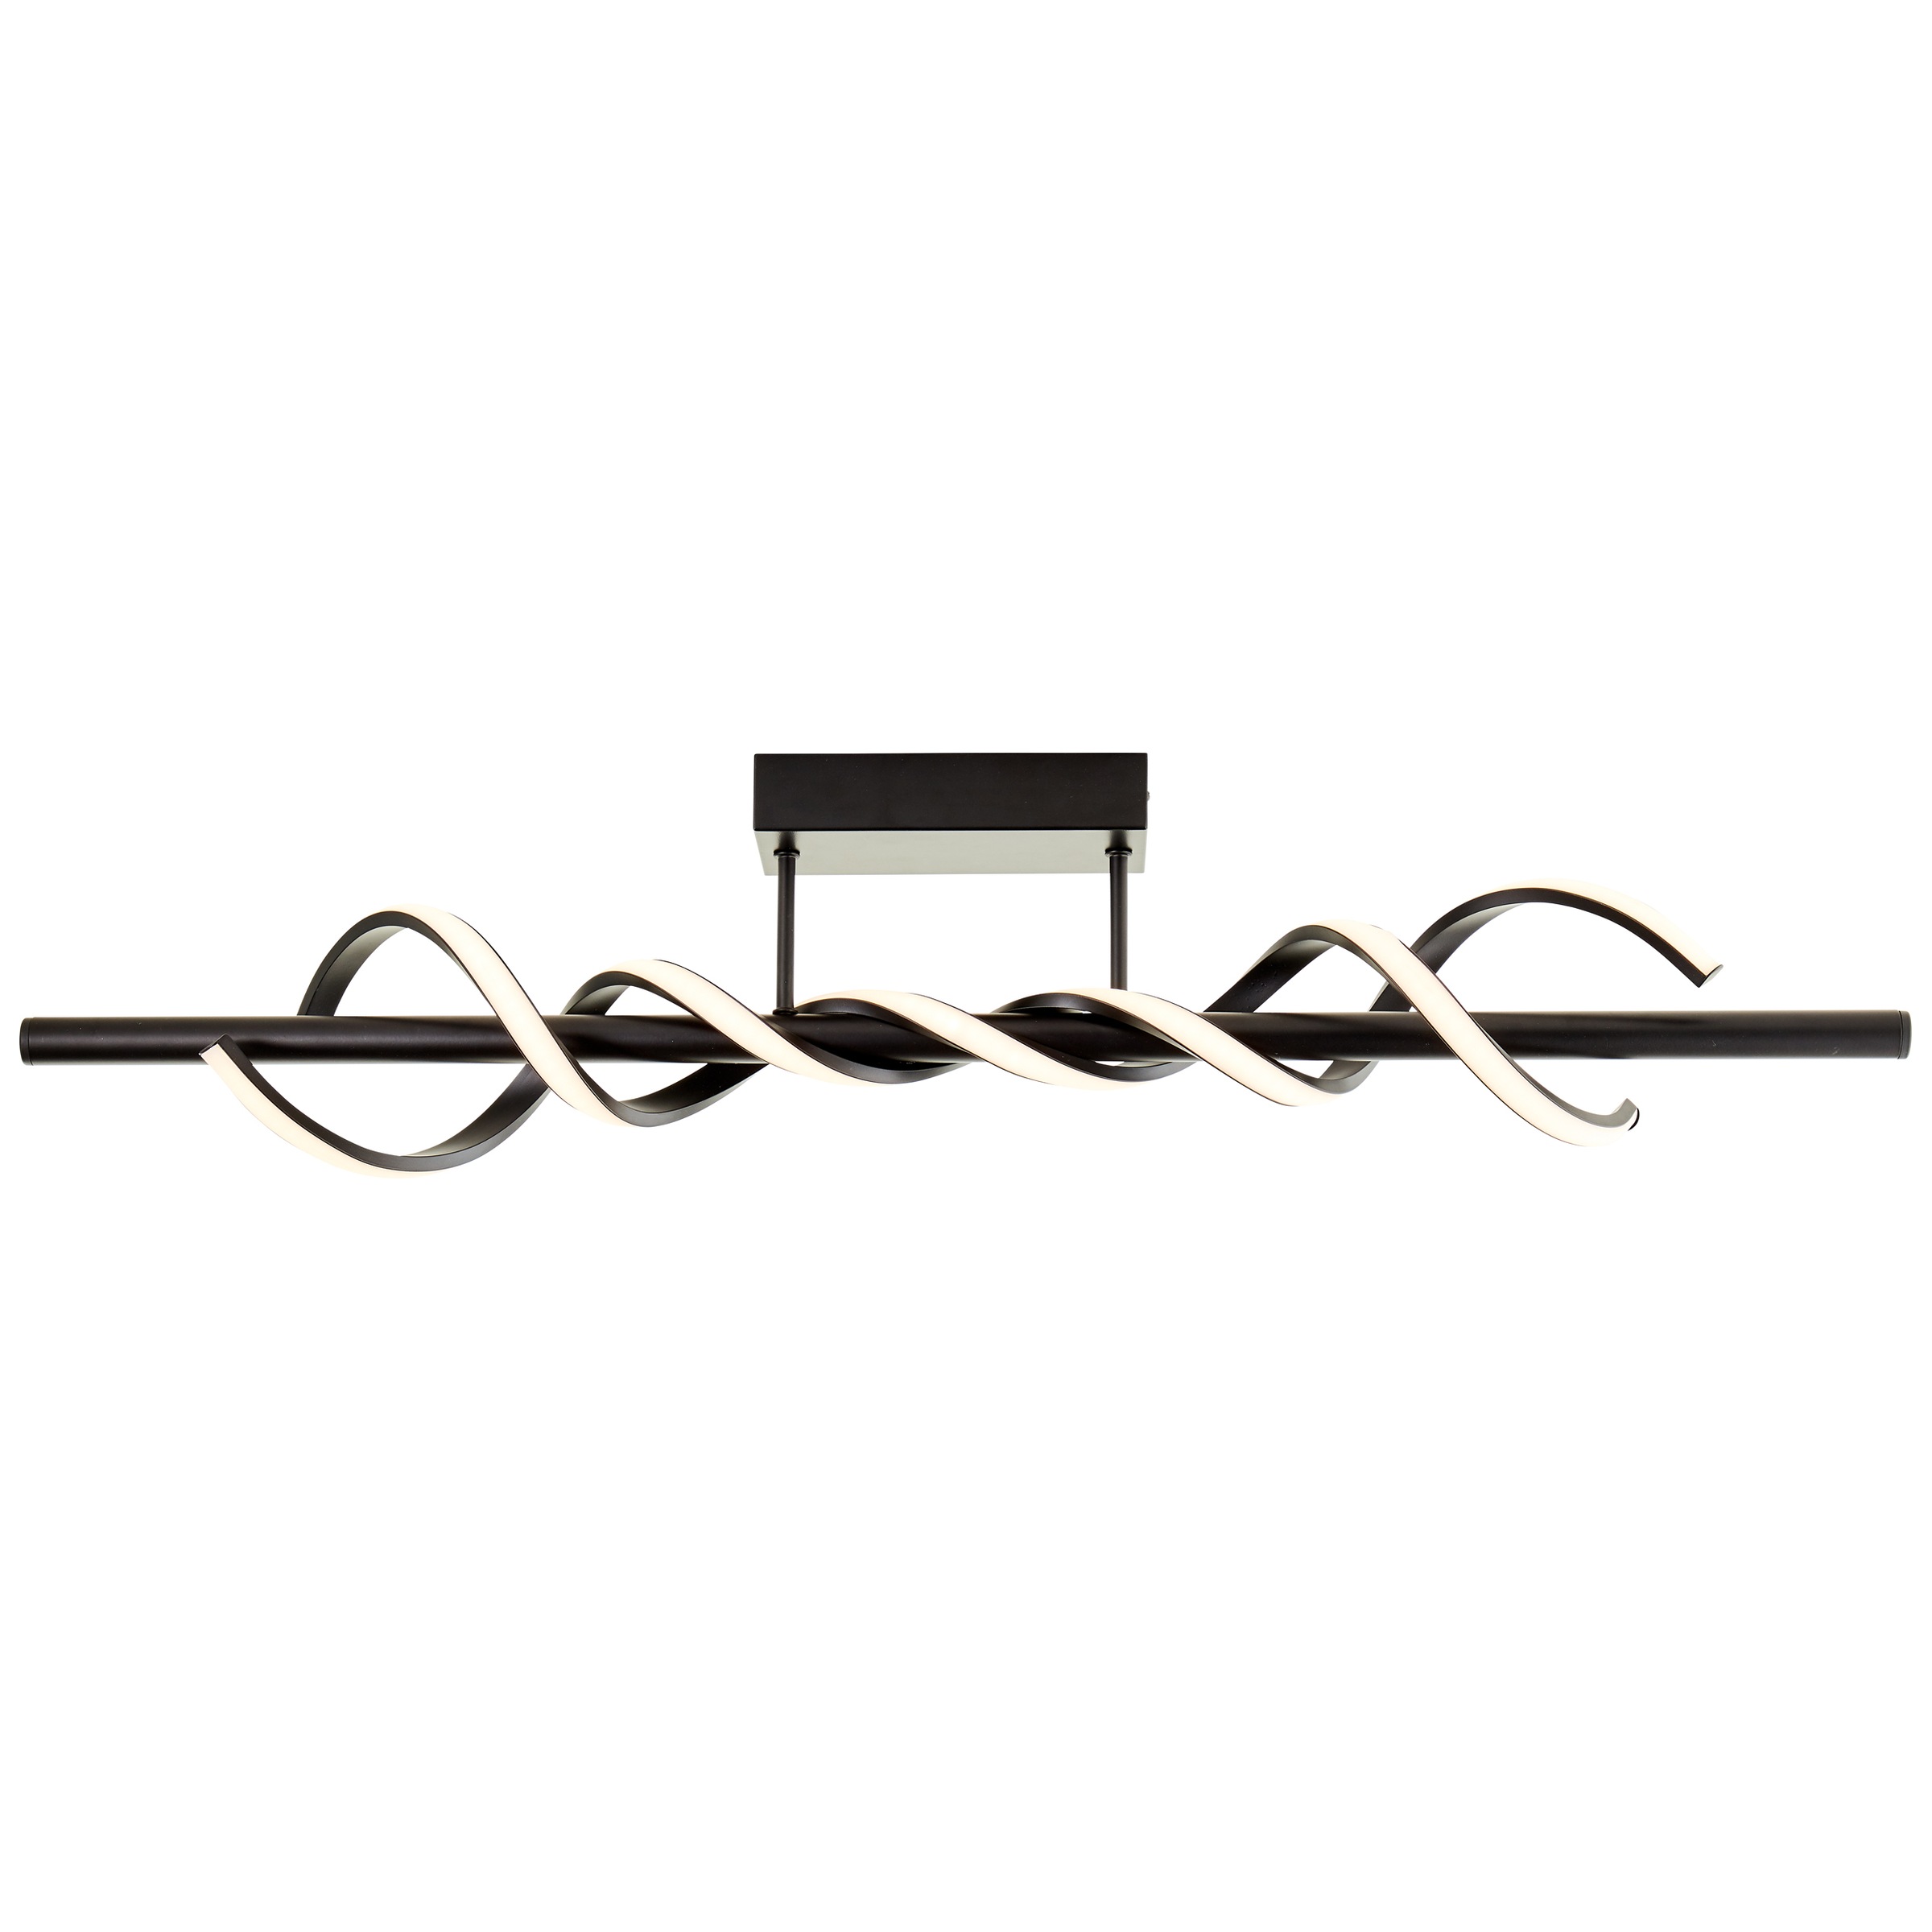 Brilliant LED Deckenleuchte »Amalie«, Breite 96 cm, 2600 lm, Metall/Kunststoff, schwarz